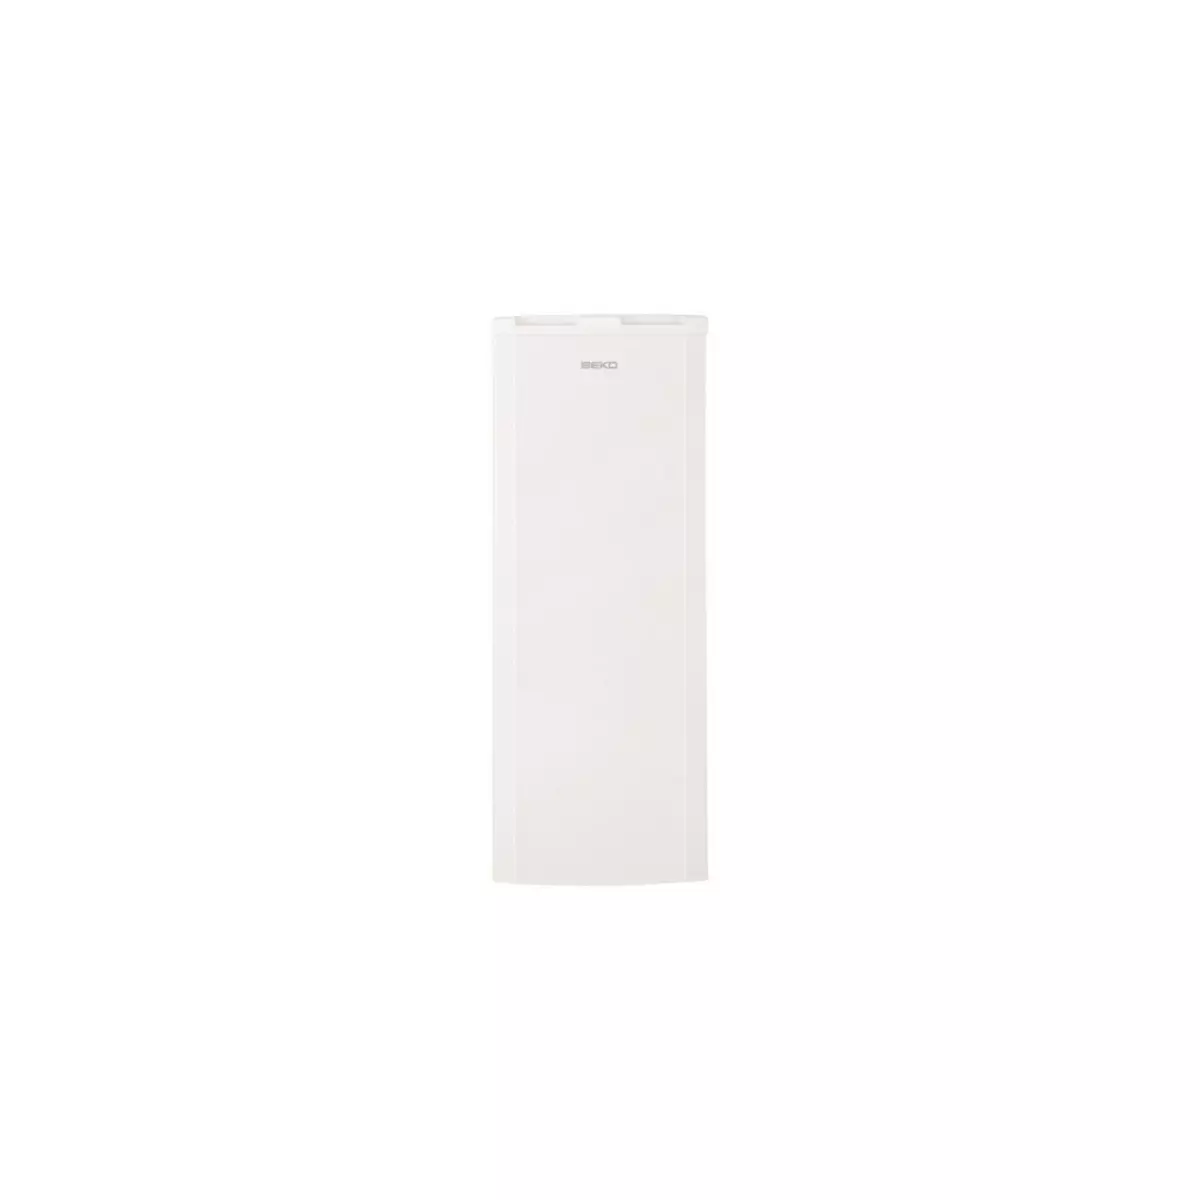 BEKO Réfrigérateur 1 porte SSE26026, 256 L, Froid Statique